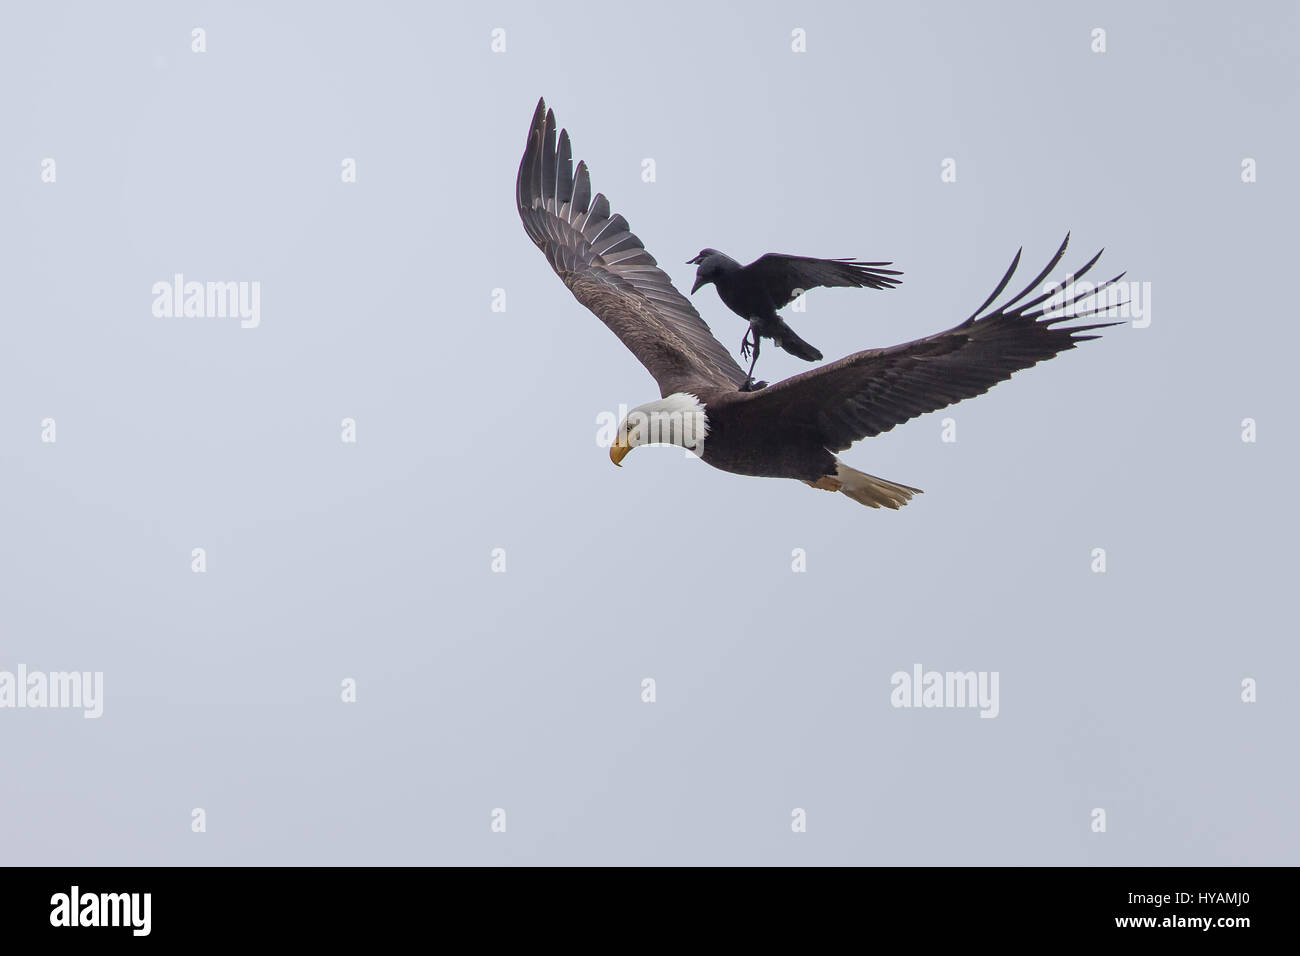 Un descarado, cuervo ha sido fotografiado en un raro momento cogiendo un  ascensor en la espalda de un águila calva de 25 pies en el aire. Estas  imágenes muestran el inusual momento